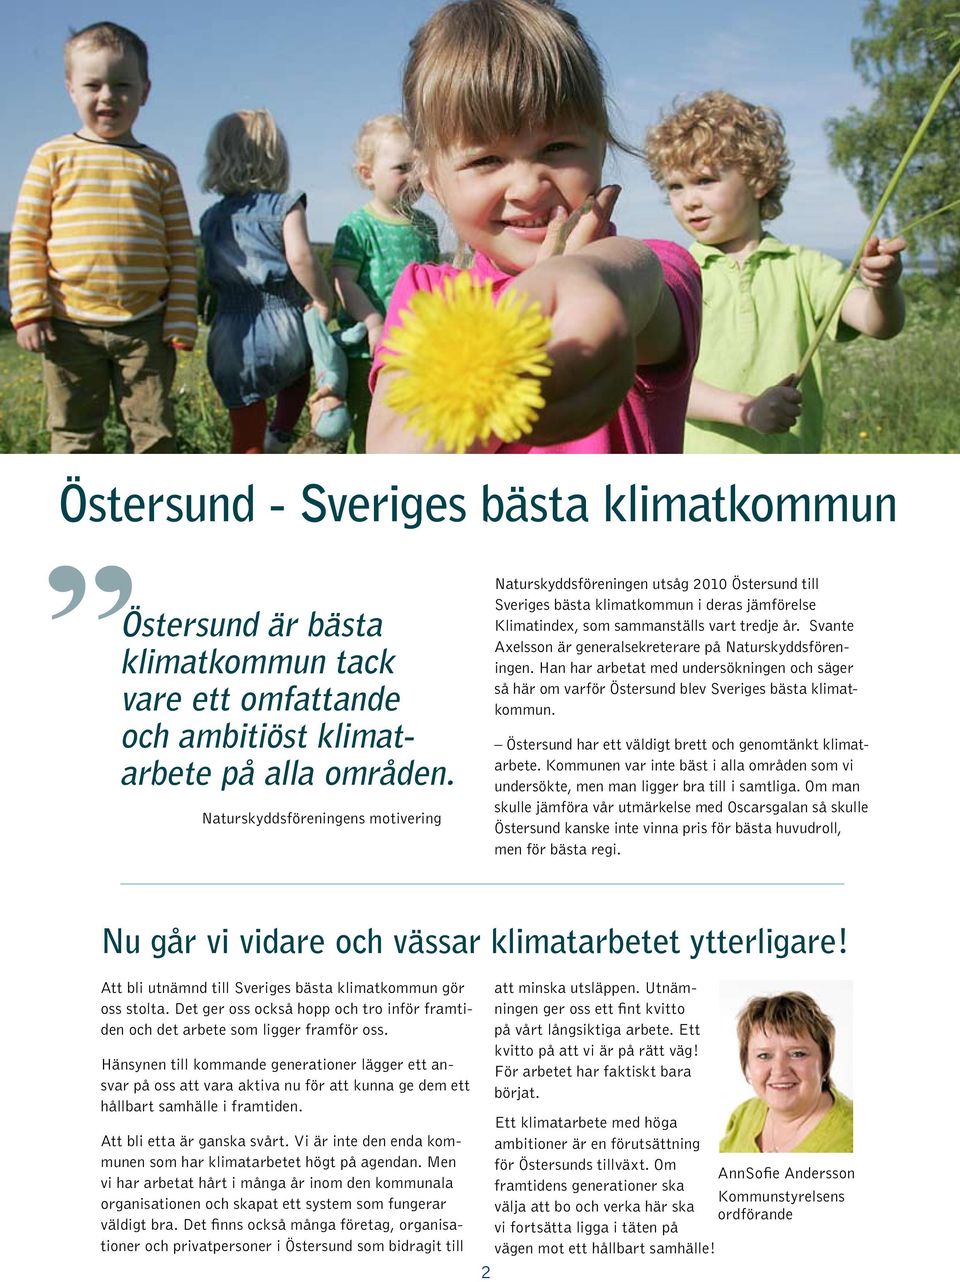 Svante Axelsson är generalsekreterare på Naturskyddsföreningen. Han har arbetat med undersökningen och säger så här om varför Östersund blev Sveriges bästa klimatkommun.